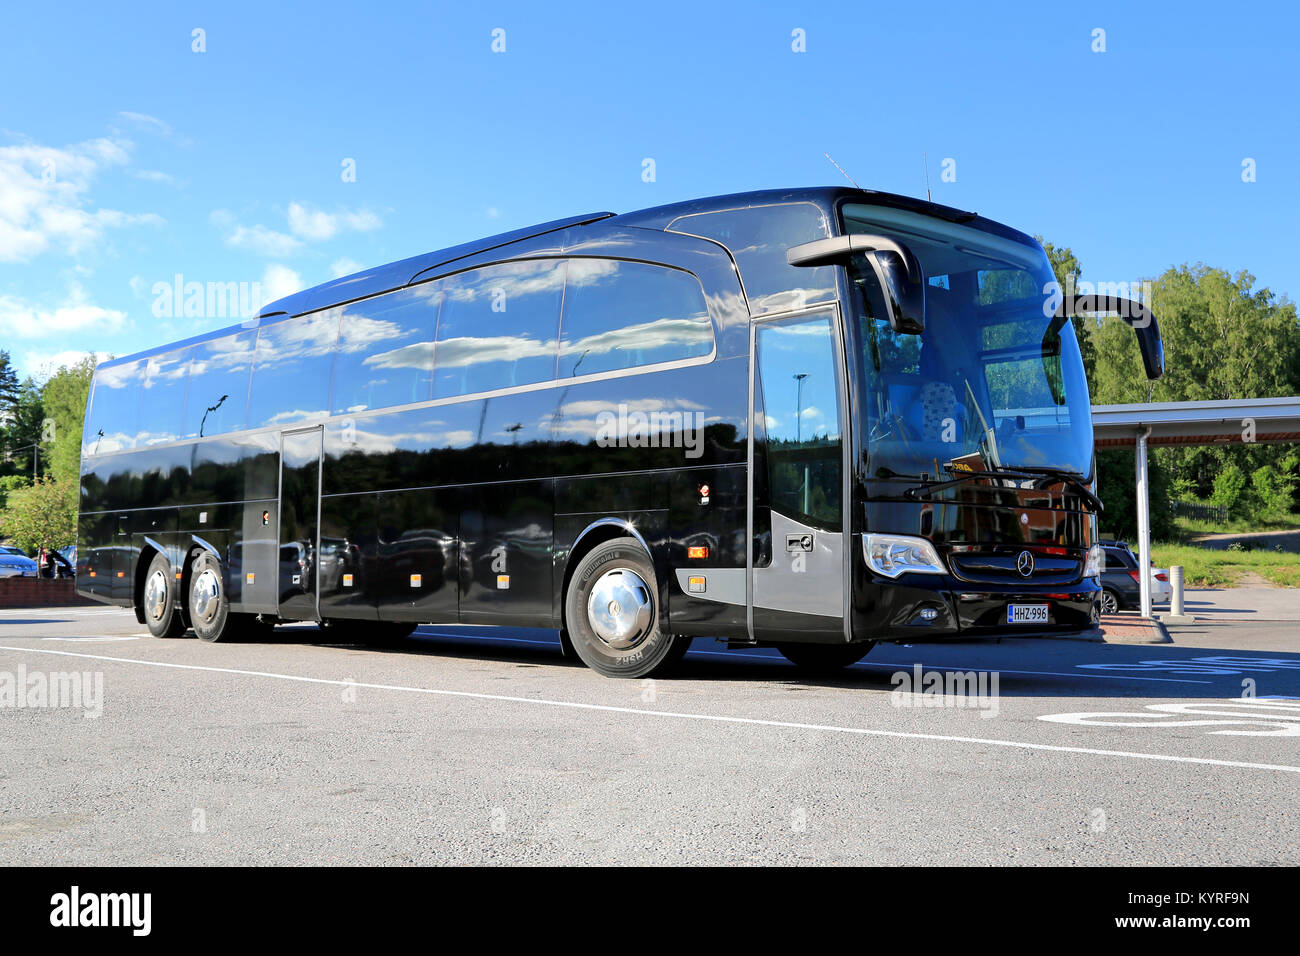 SALO, Finnland - 14. JUNI 2014: Schwarz Mercedes-Benz Travego Bus hält an der Bushaltestelle parken. In IIA, Daimler präsentiert die Safety Coach Travego bus Version Stockfoto